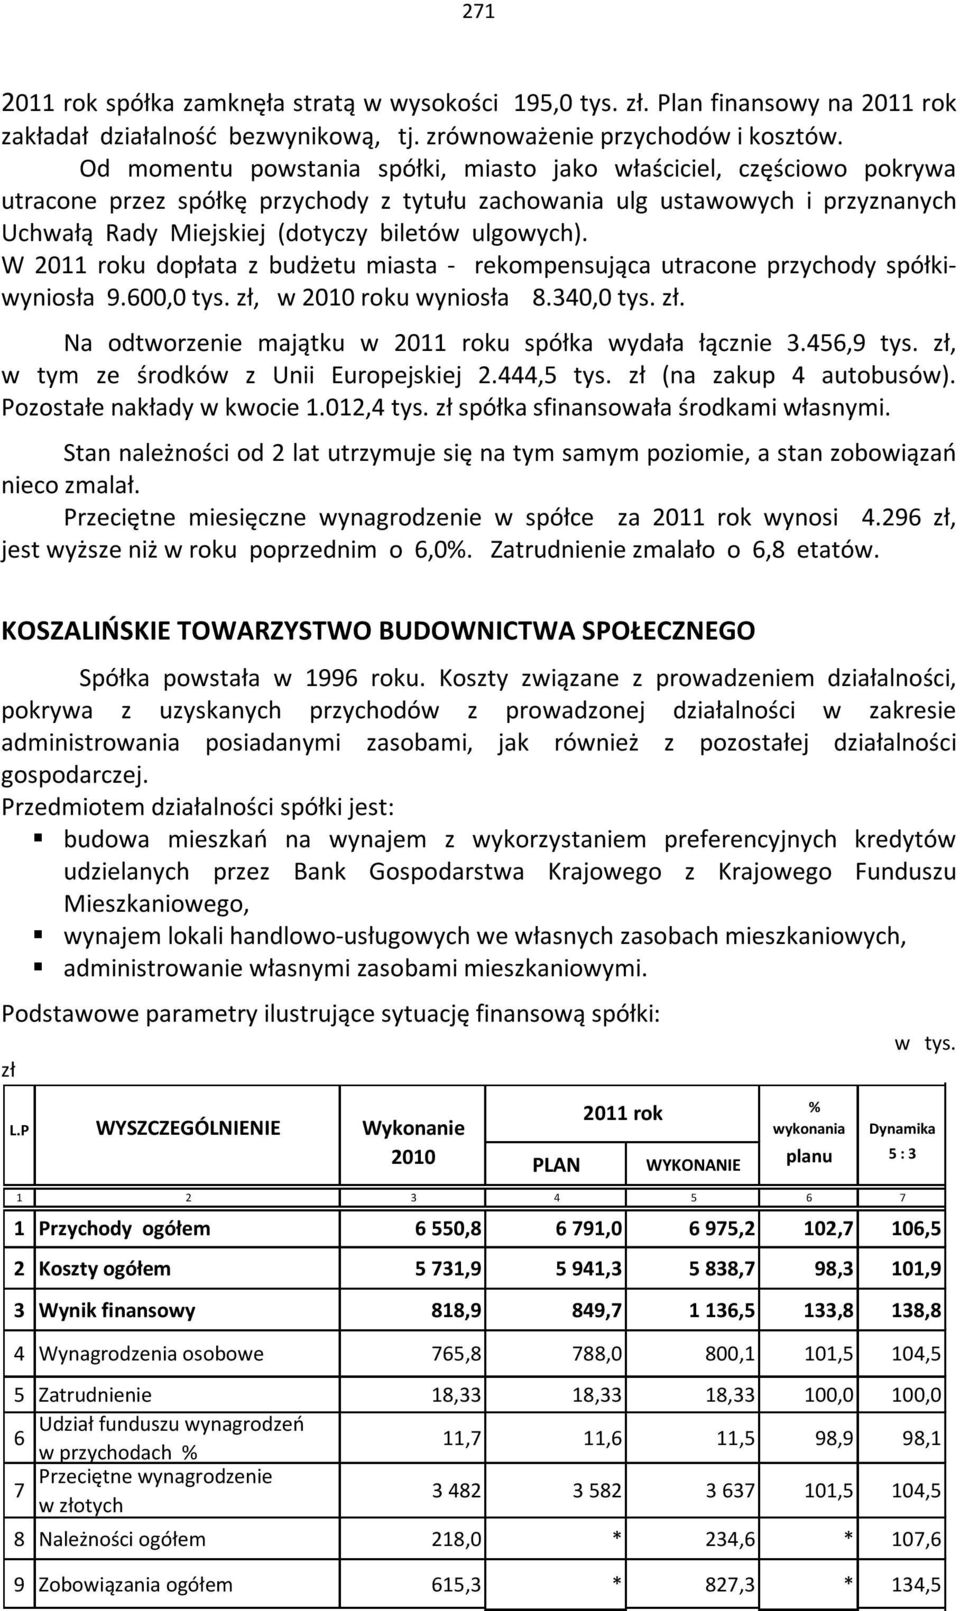 ulgowych). W 2011 roku dopłata z budżetu miasta - rekompensująca utracone przychody spółkiwyniosła 9.00,0 tys. zł, w 2010 roku wyniosła 8.340,0 tys. zł. Na odtworzenie majątku w 2011 roku spółka wydała łącznie 3.